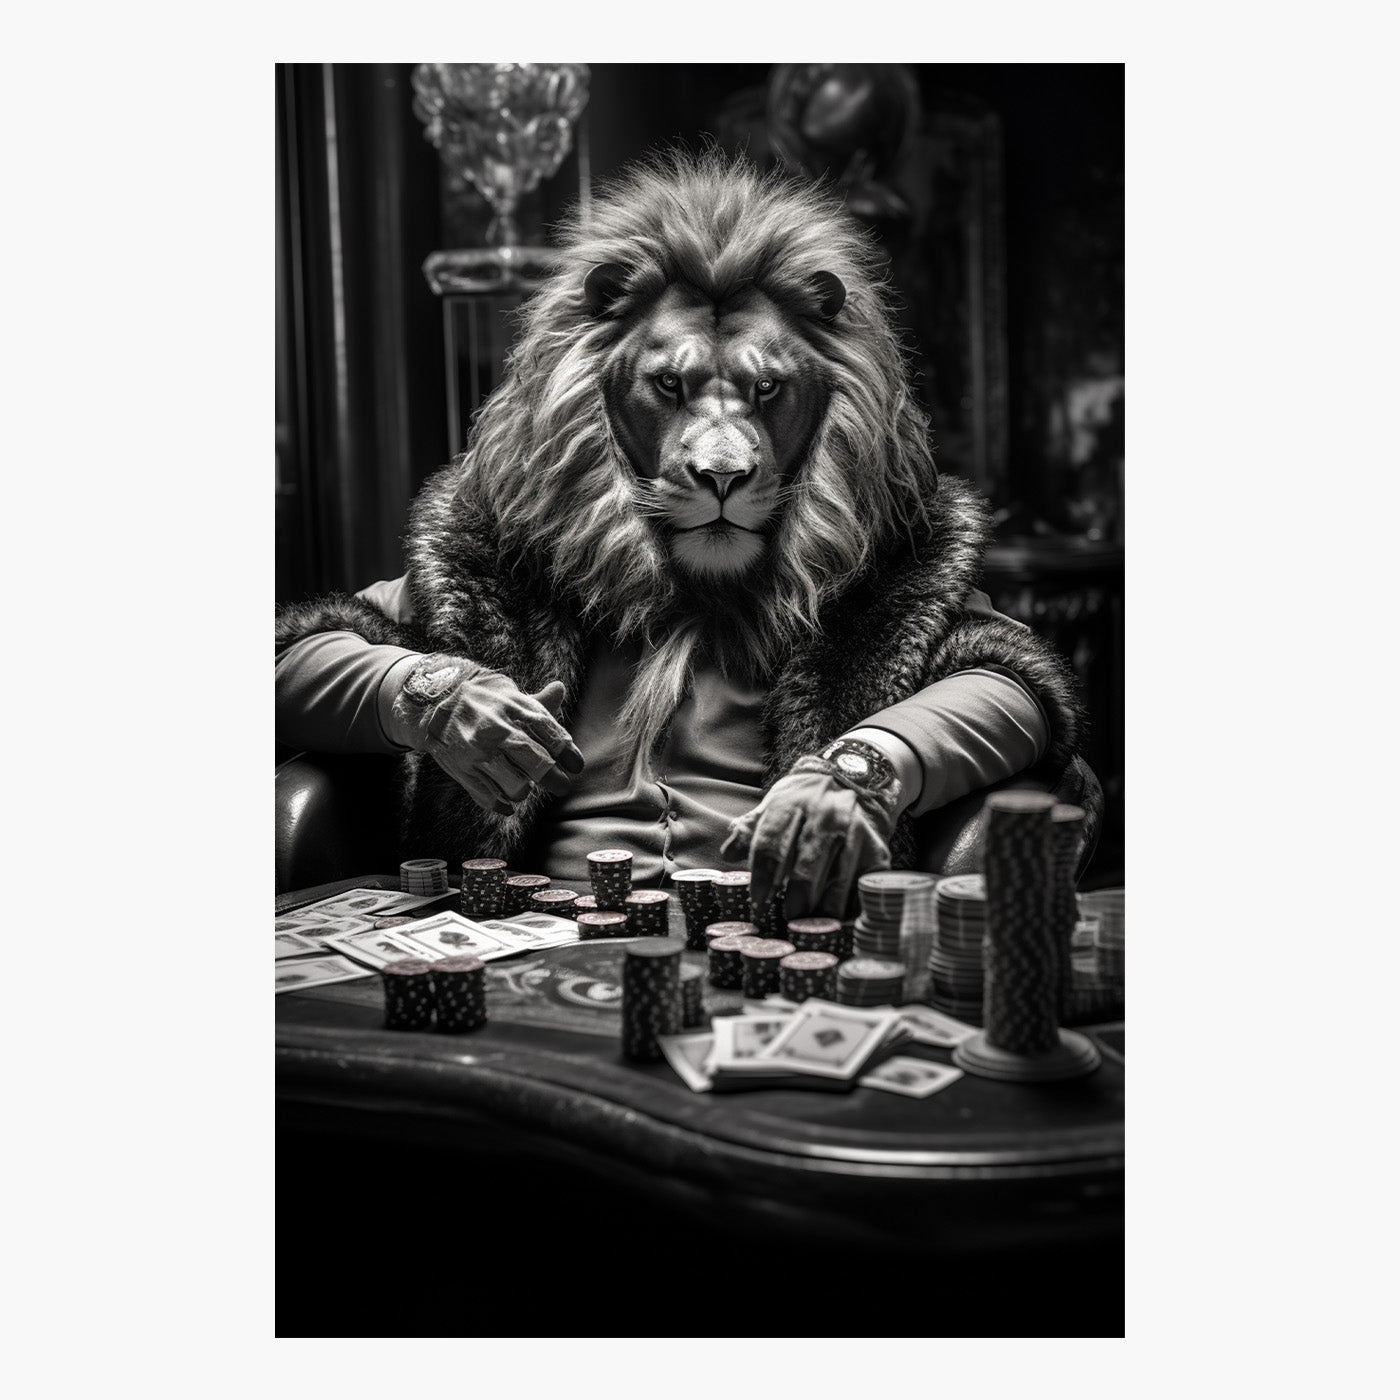 Lion's Gamble